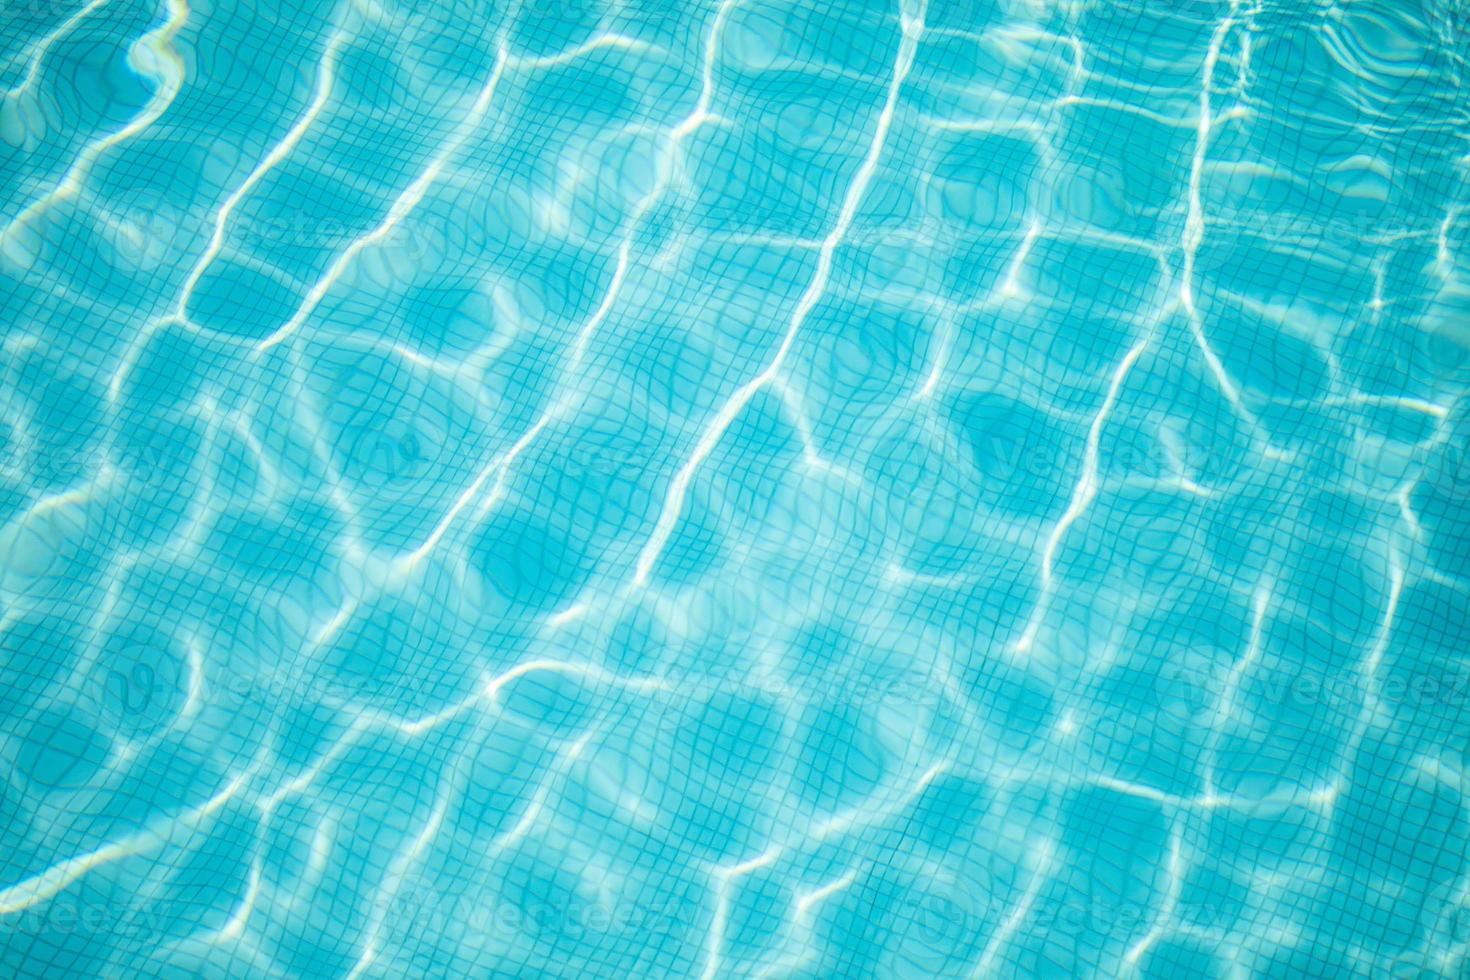 superficie de la piscina azul, fondo de agua en la piscina. diversión de verano, actividad recreativa al aire libre, superficie de agua azul soleada foto